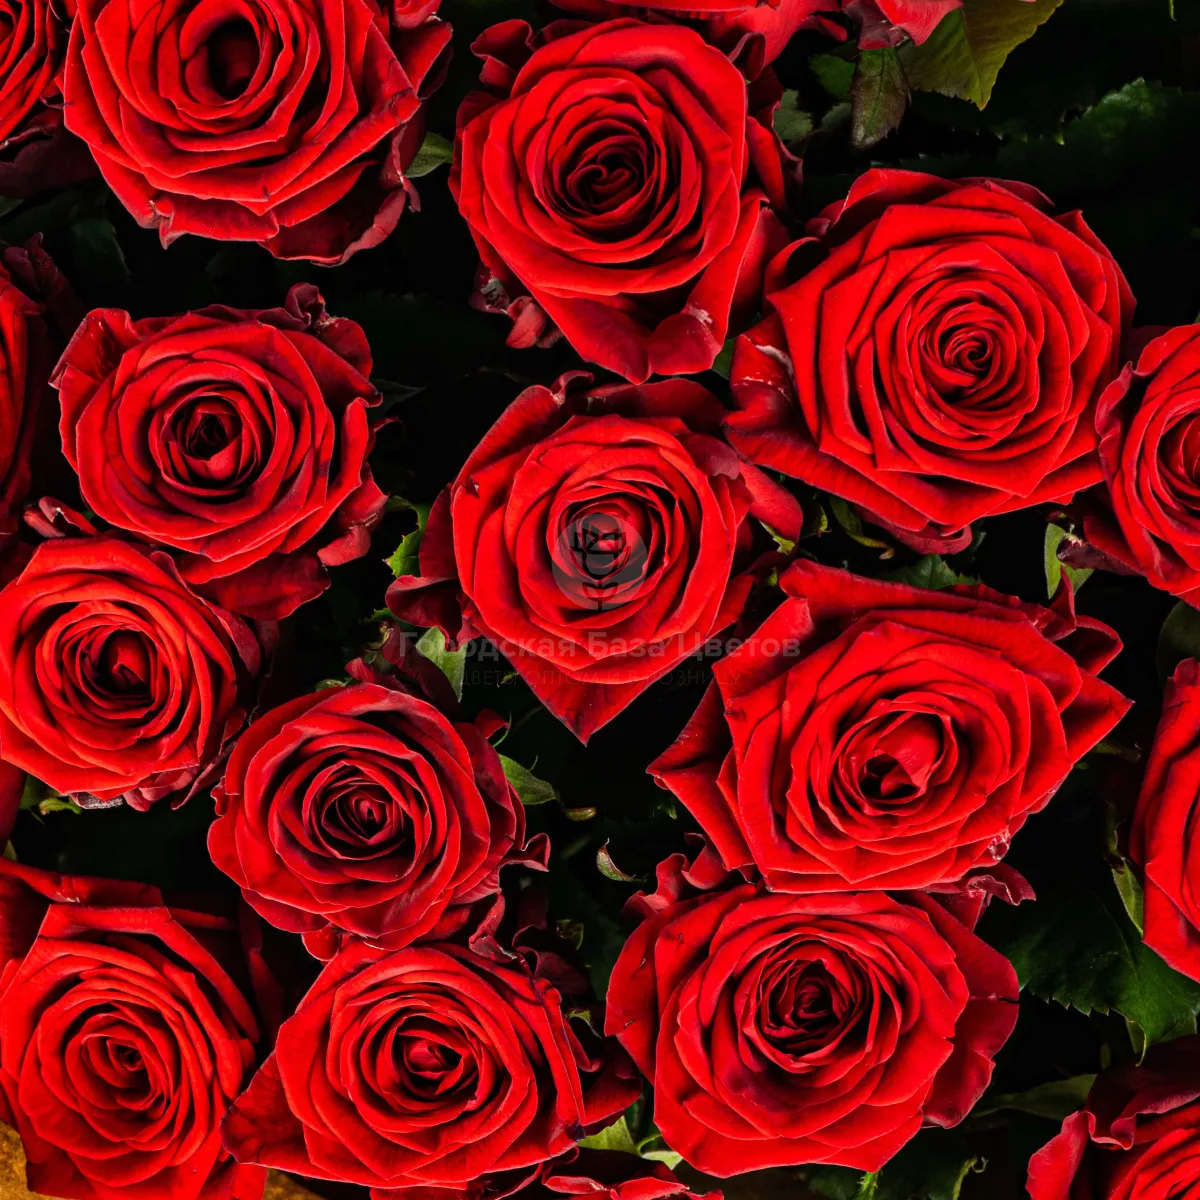 23 красные розы (70 см)